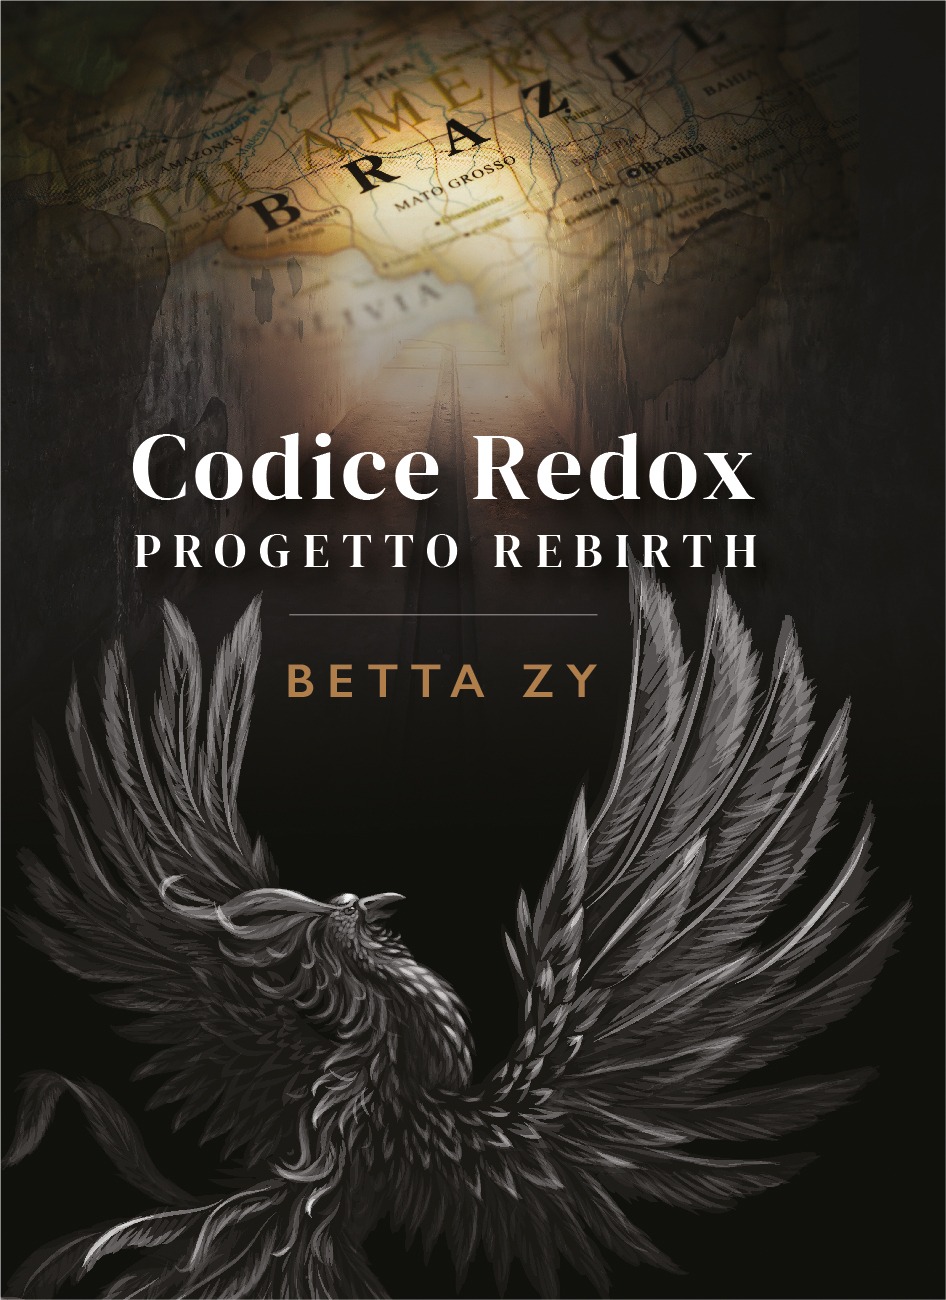 Front cover del libro di Betta Zy: "CODICE REDOX. PROGETTO REBIRTH" (2022)